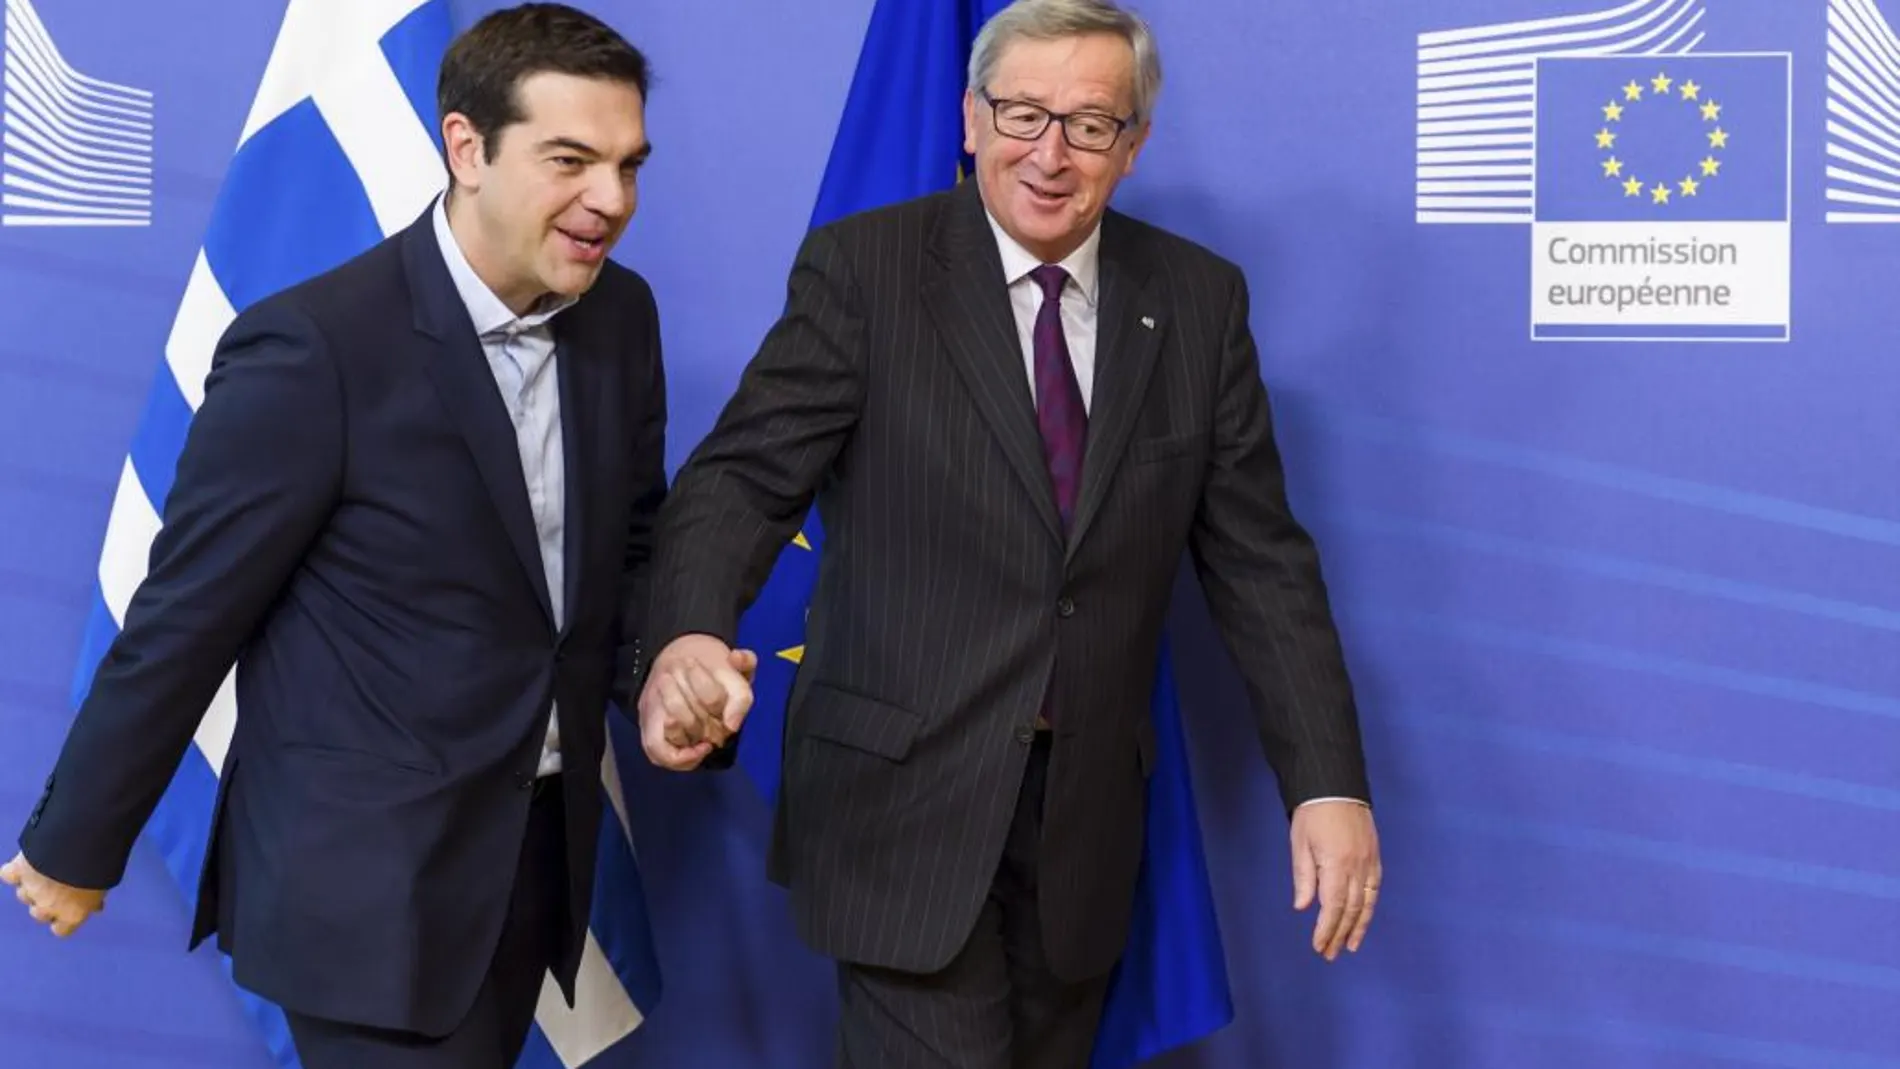 Imagen de archivo, del pasado 4 de febrero, del presidente de la Comisión Europea (CE), Jean Claude Juncker (d), dando la bienvenida al nuevo primer ministro griego, Alexis Tsipras, antes de su reunión celebrada en la sede de la CE en Bruselas (Bélgica)